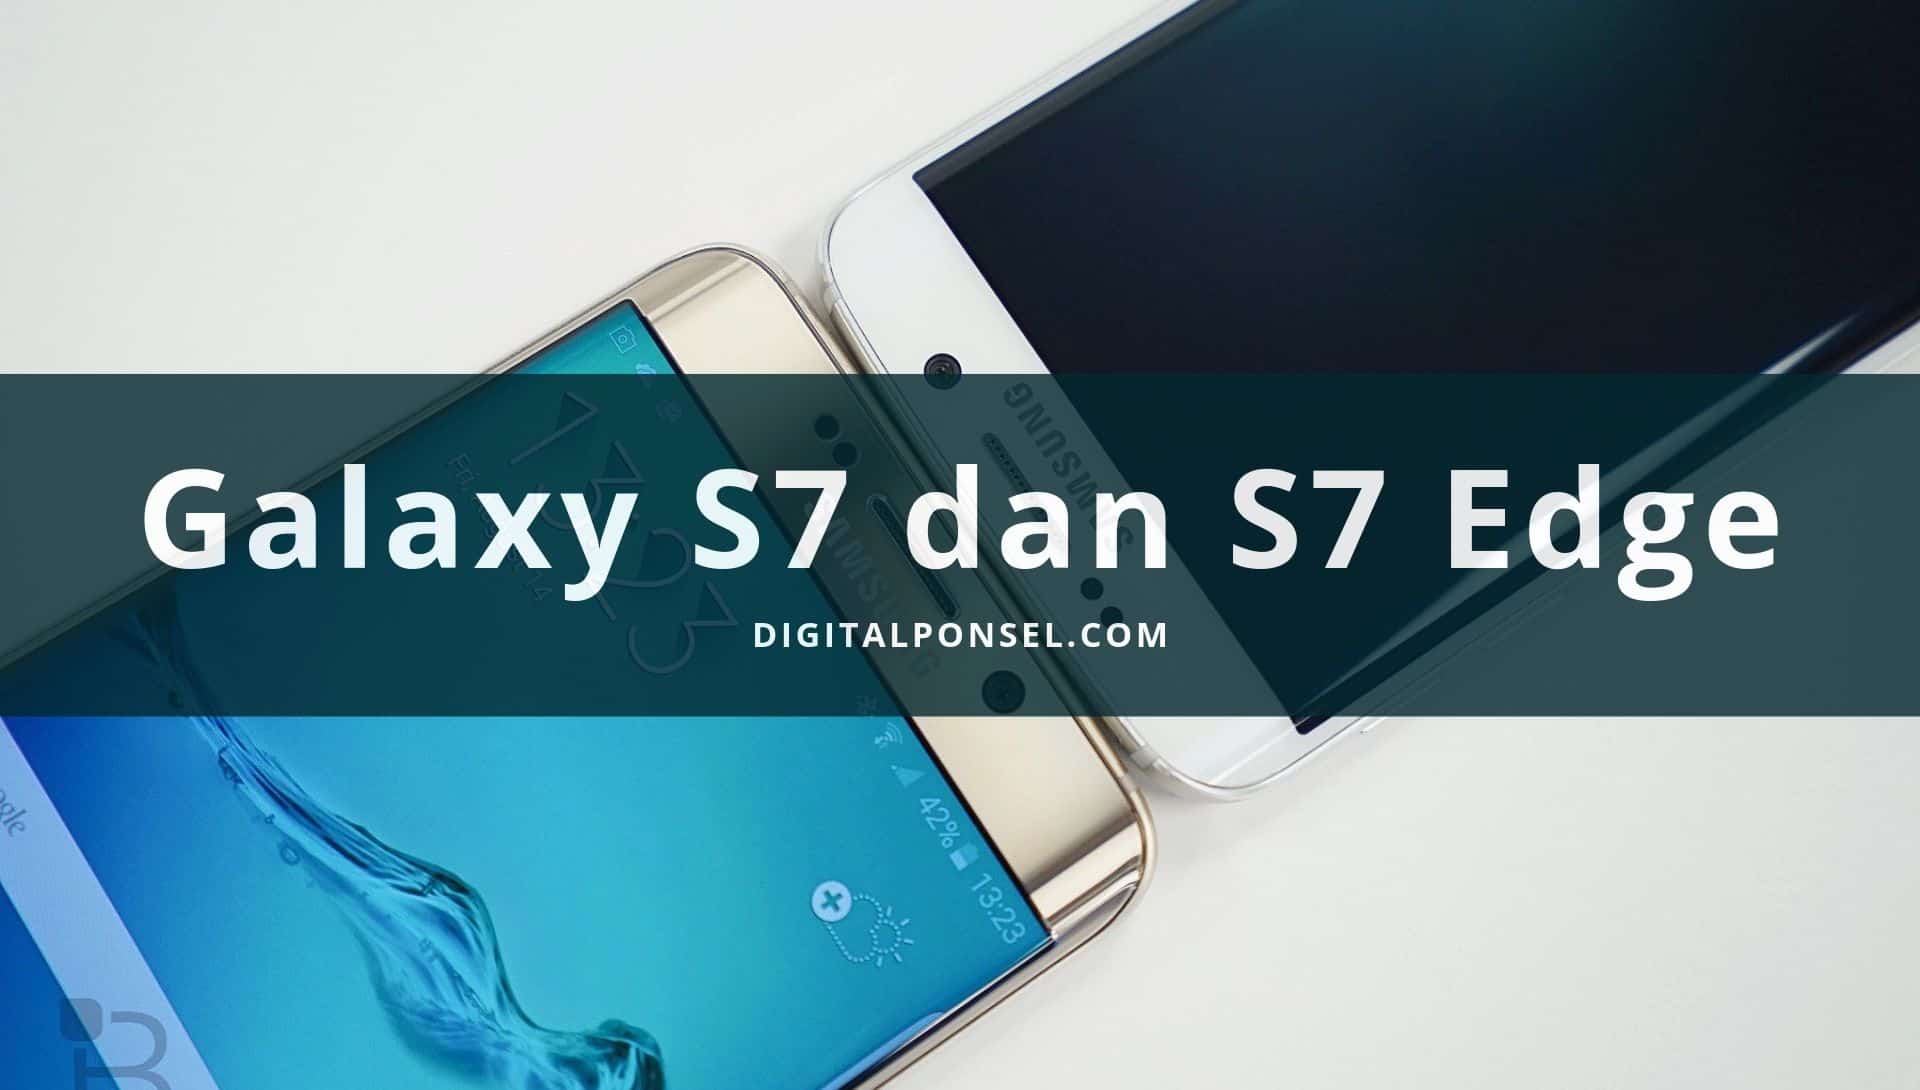 Samsung Galaxy s7 dan s7 Edge